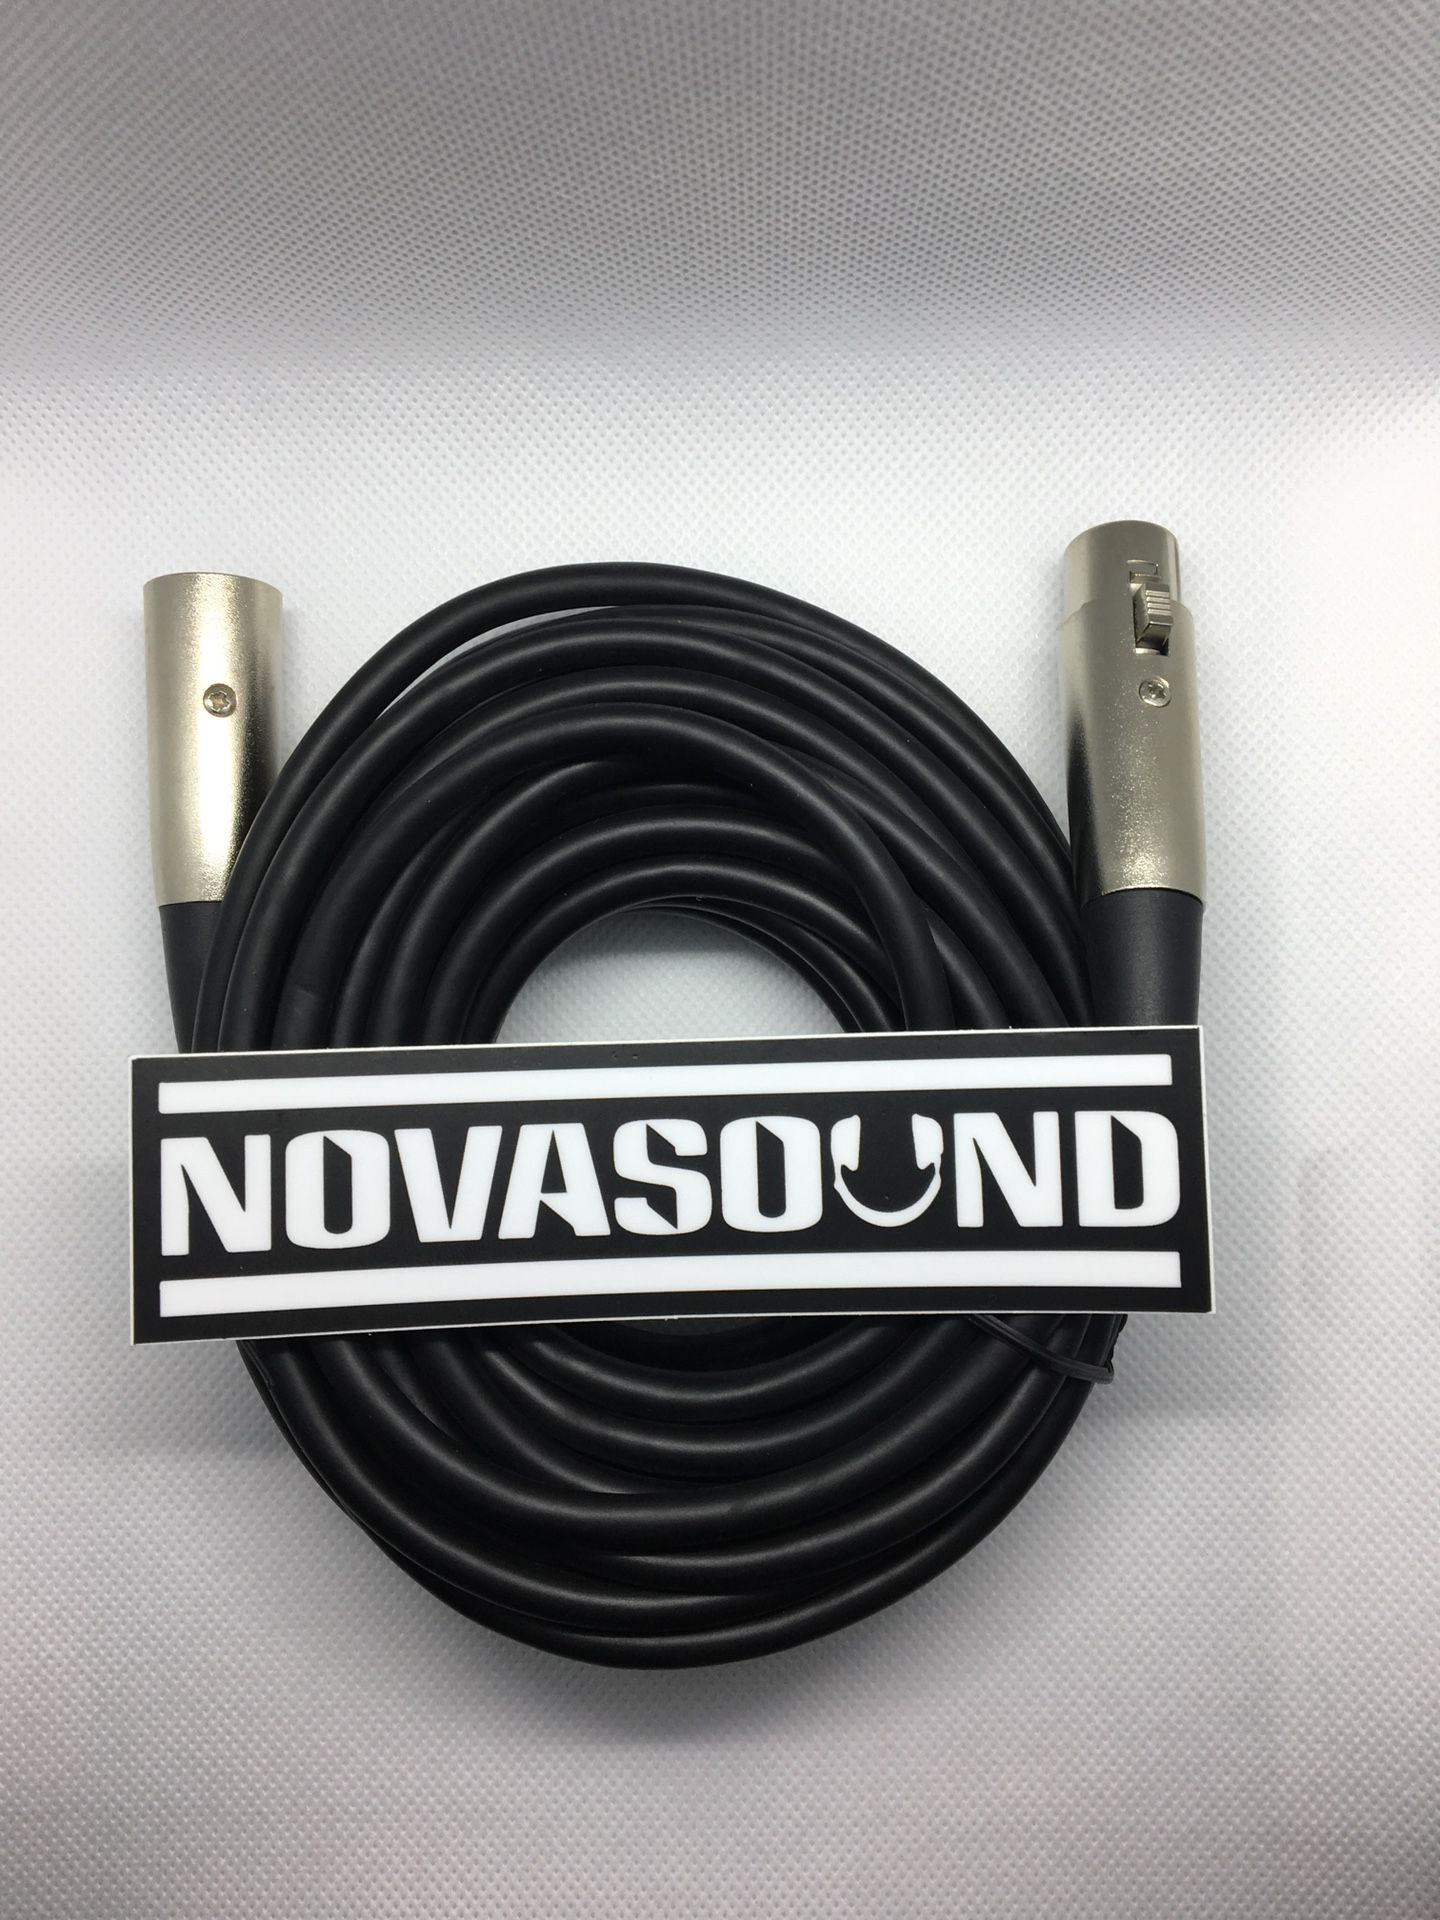 25 FT XLR Cables - $10 Each - Audio, Sound, DJs, Music